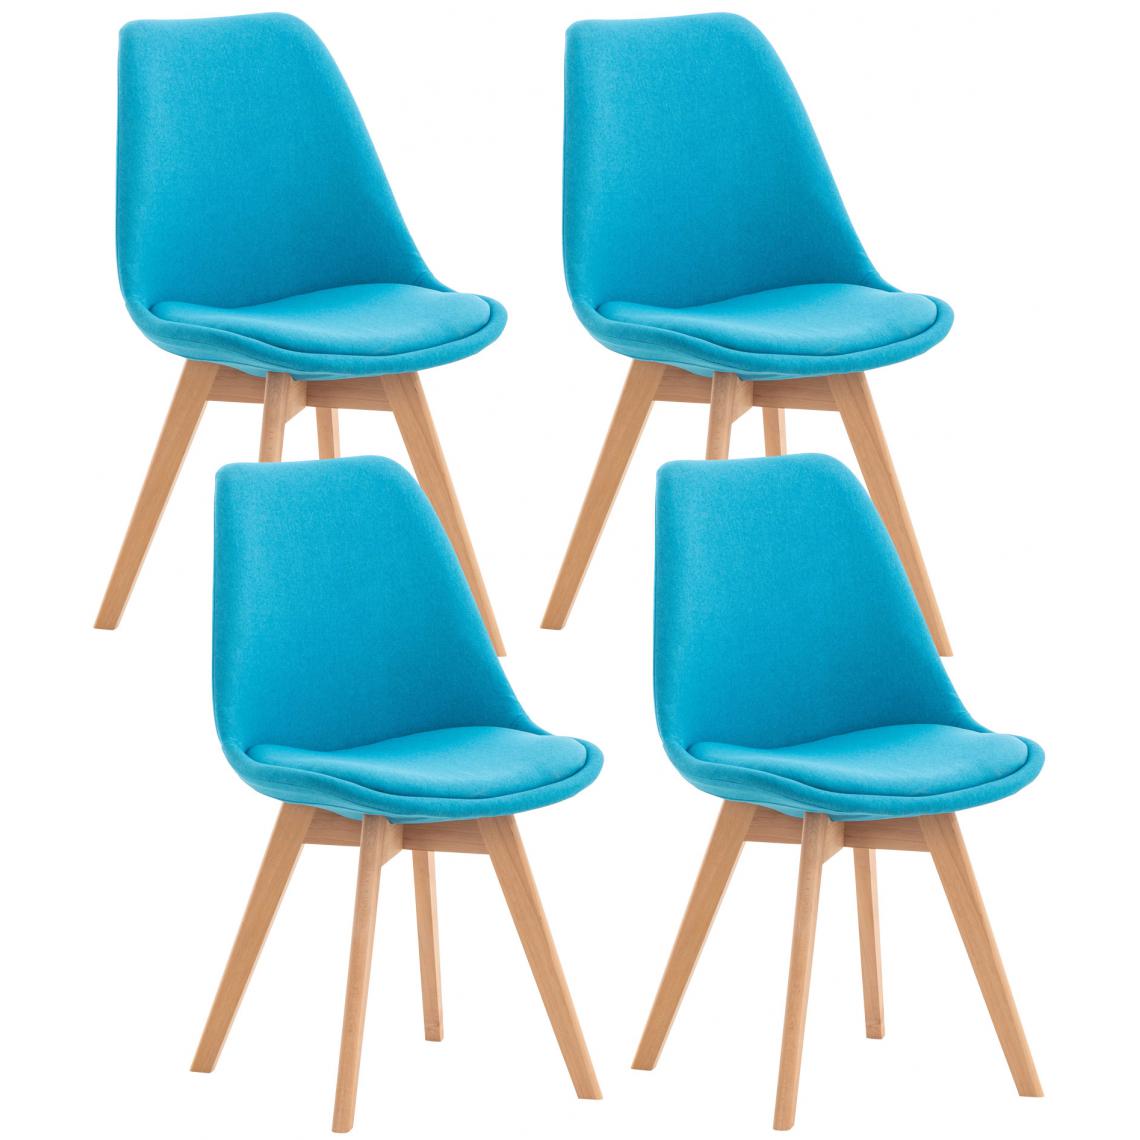 Icaverne - Splendide Lot de 4 chaises en tissu collection Oulan-Bator couleur turquoise - Tabourets